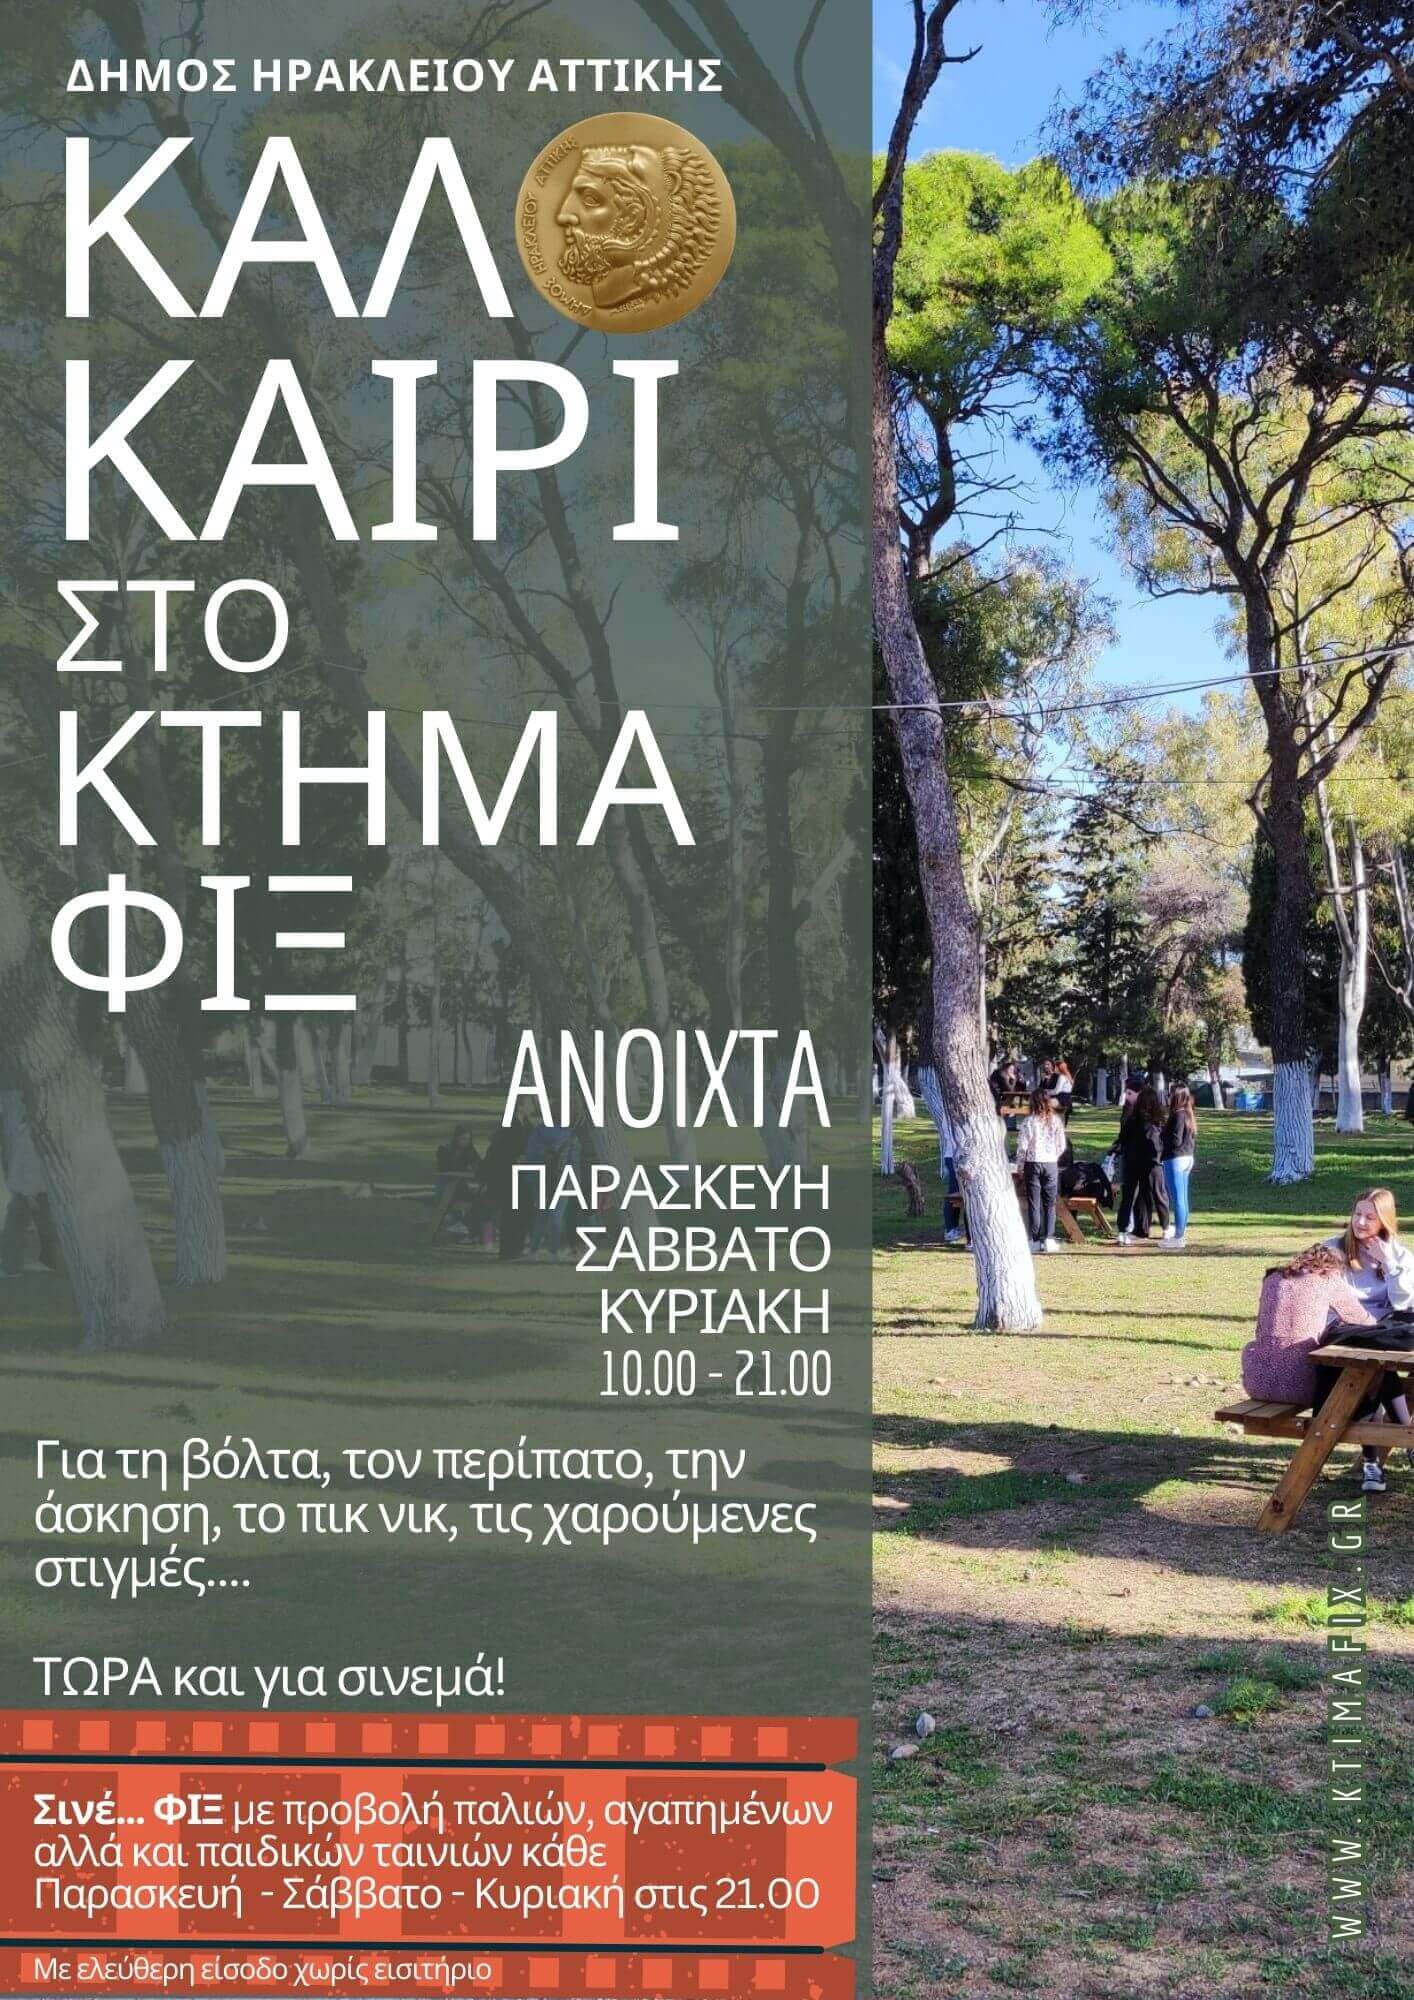 Καλοκαίρι στο Κτήμα Φιξ: περισσότερες μέρες και ώρες ανοικτό το πάρκο του Δήμου Ηρακλείου Αττικής.